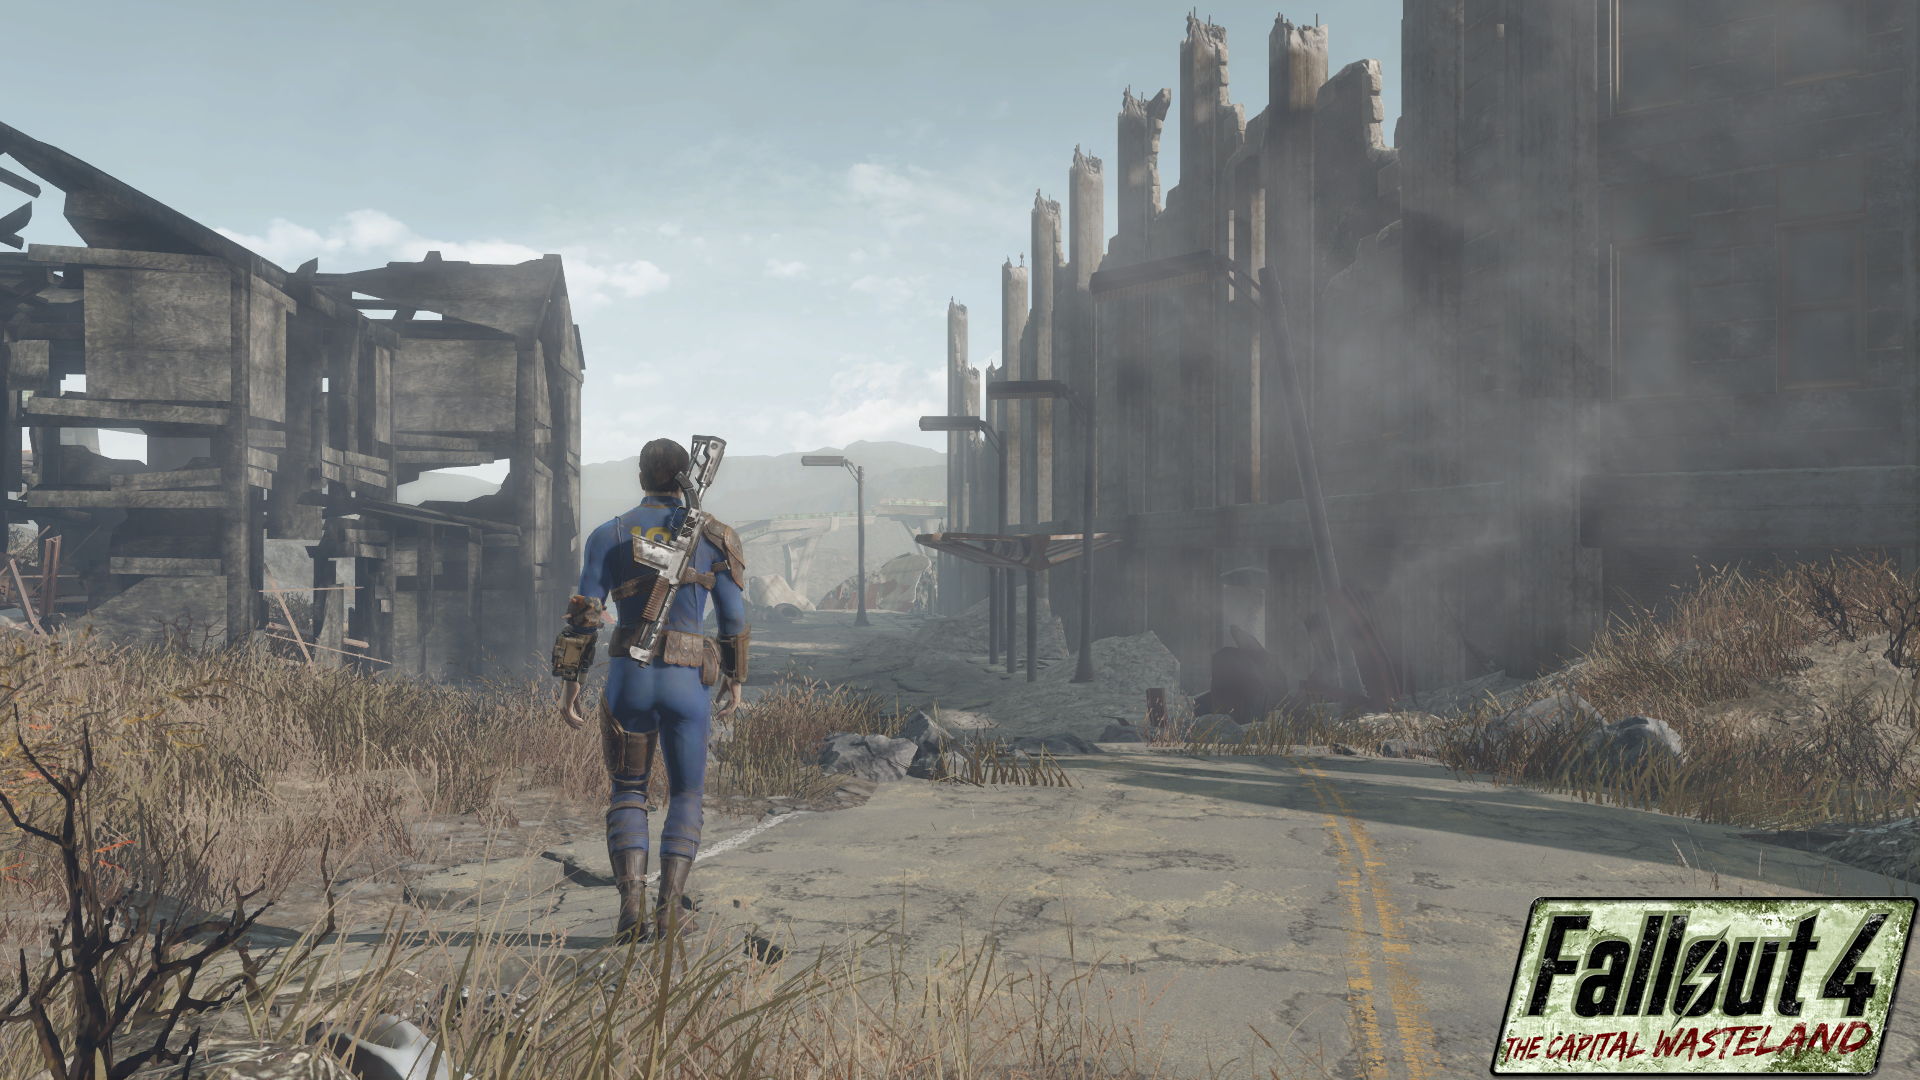 В каком году происходят события fallout. Ремейк Fallout 3. Фоллаут 4. Фоллаут 4 Столичная Пустошь. Fallout 3 Capital Wasteland.